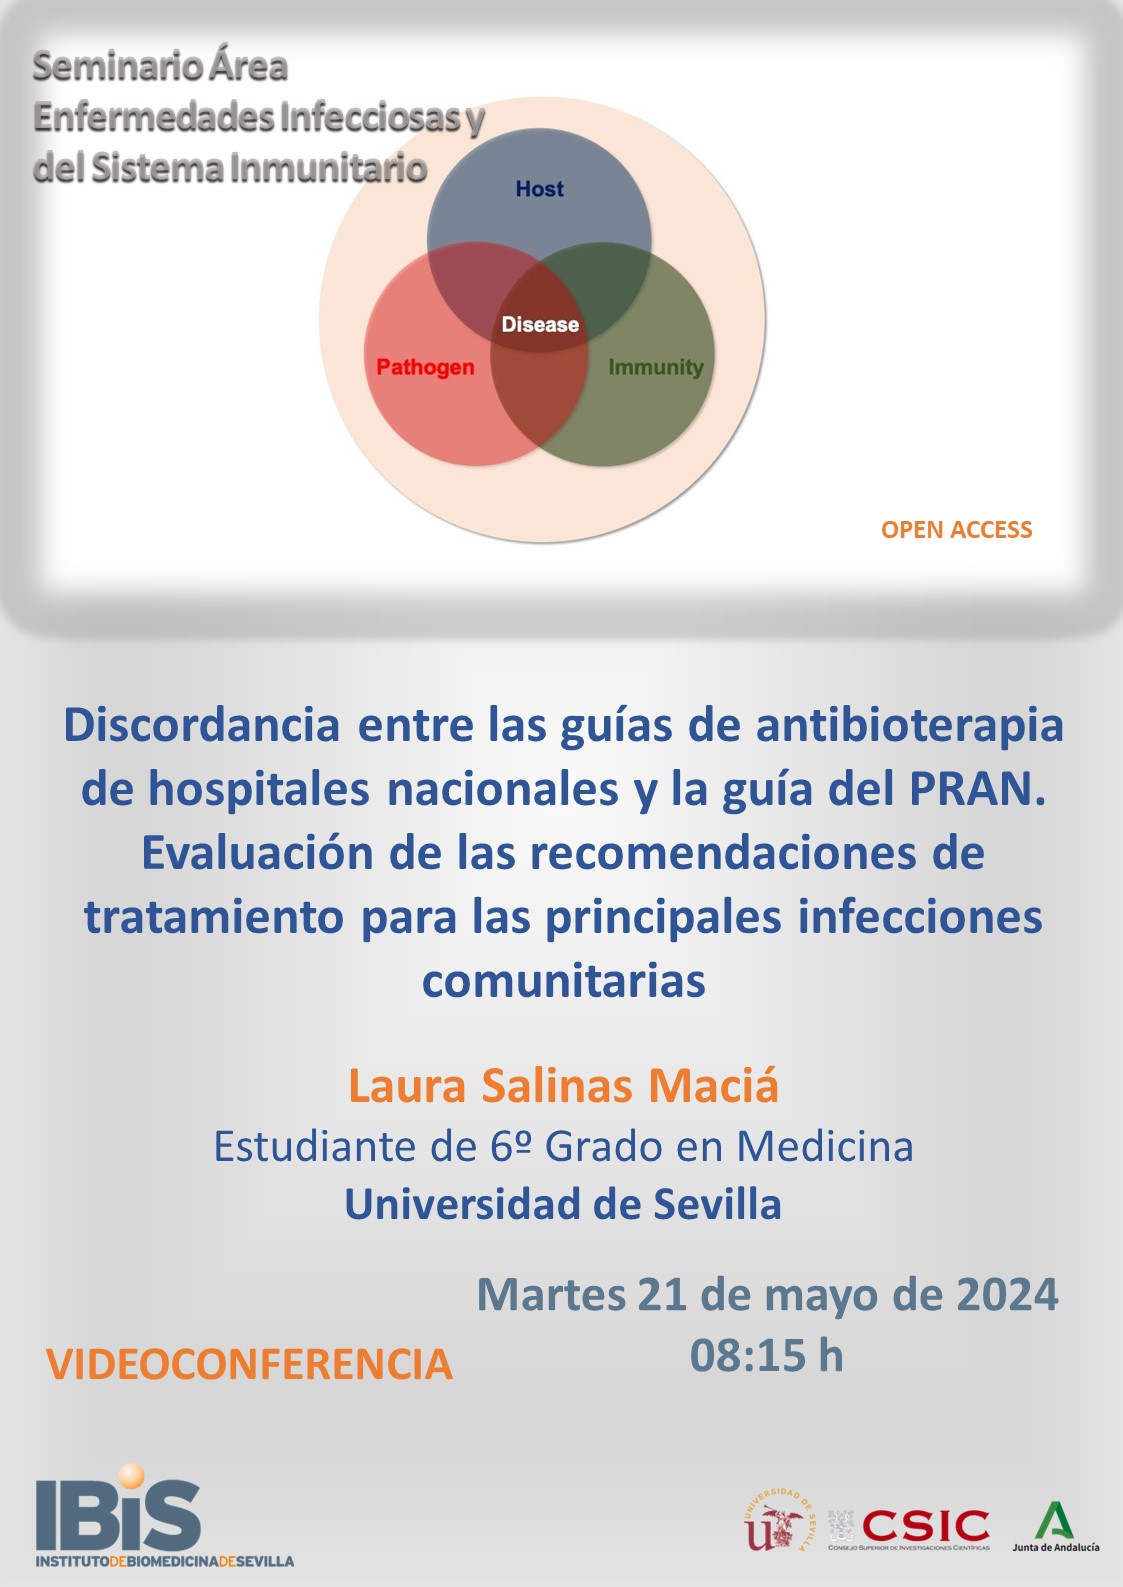 Poster: Discordancia entre las guías de antibioterapia de hospitales nacionales y la guía del PRAN. Evaluación de las recomendaciones de tratamiento para las principales infecciones comunitarias